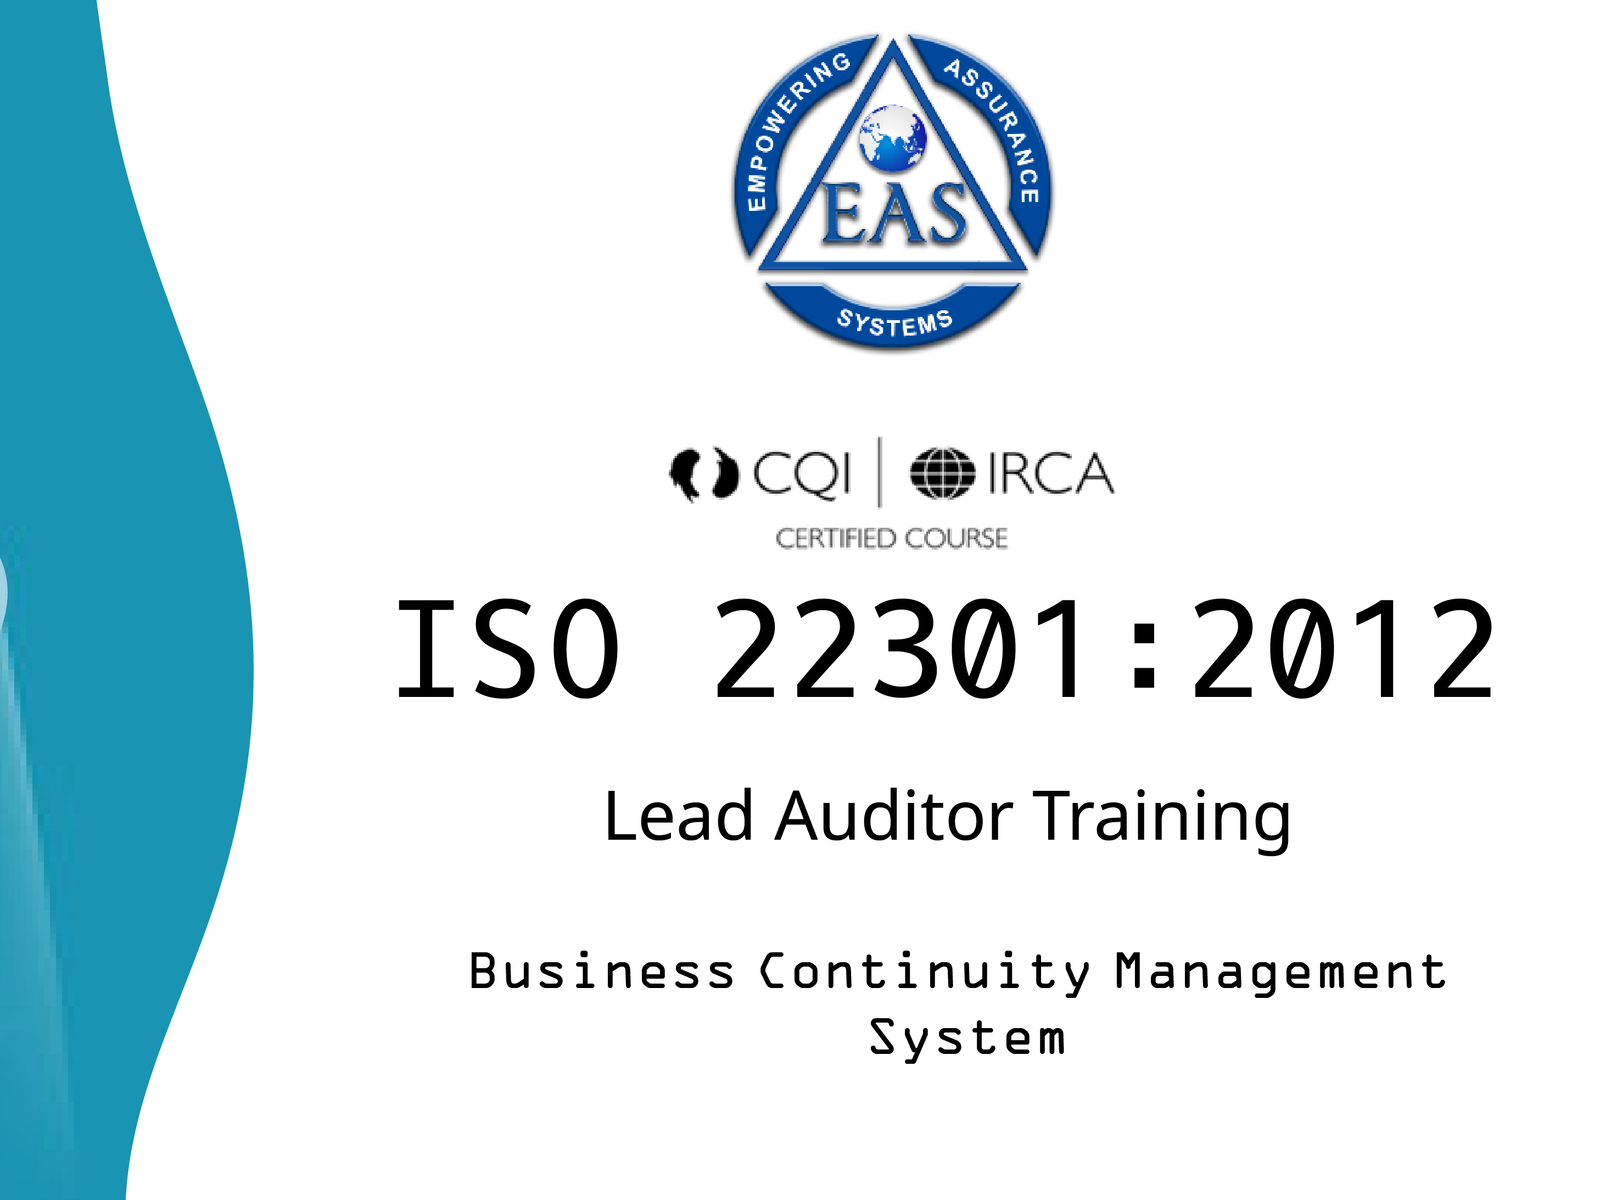 ISO-22301-Lead-Auditor Deutsche